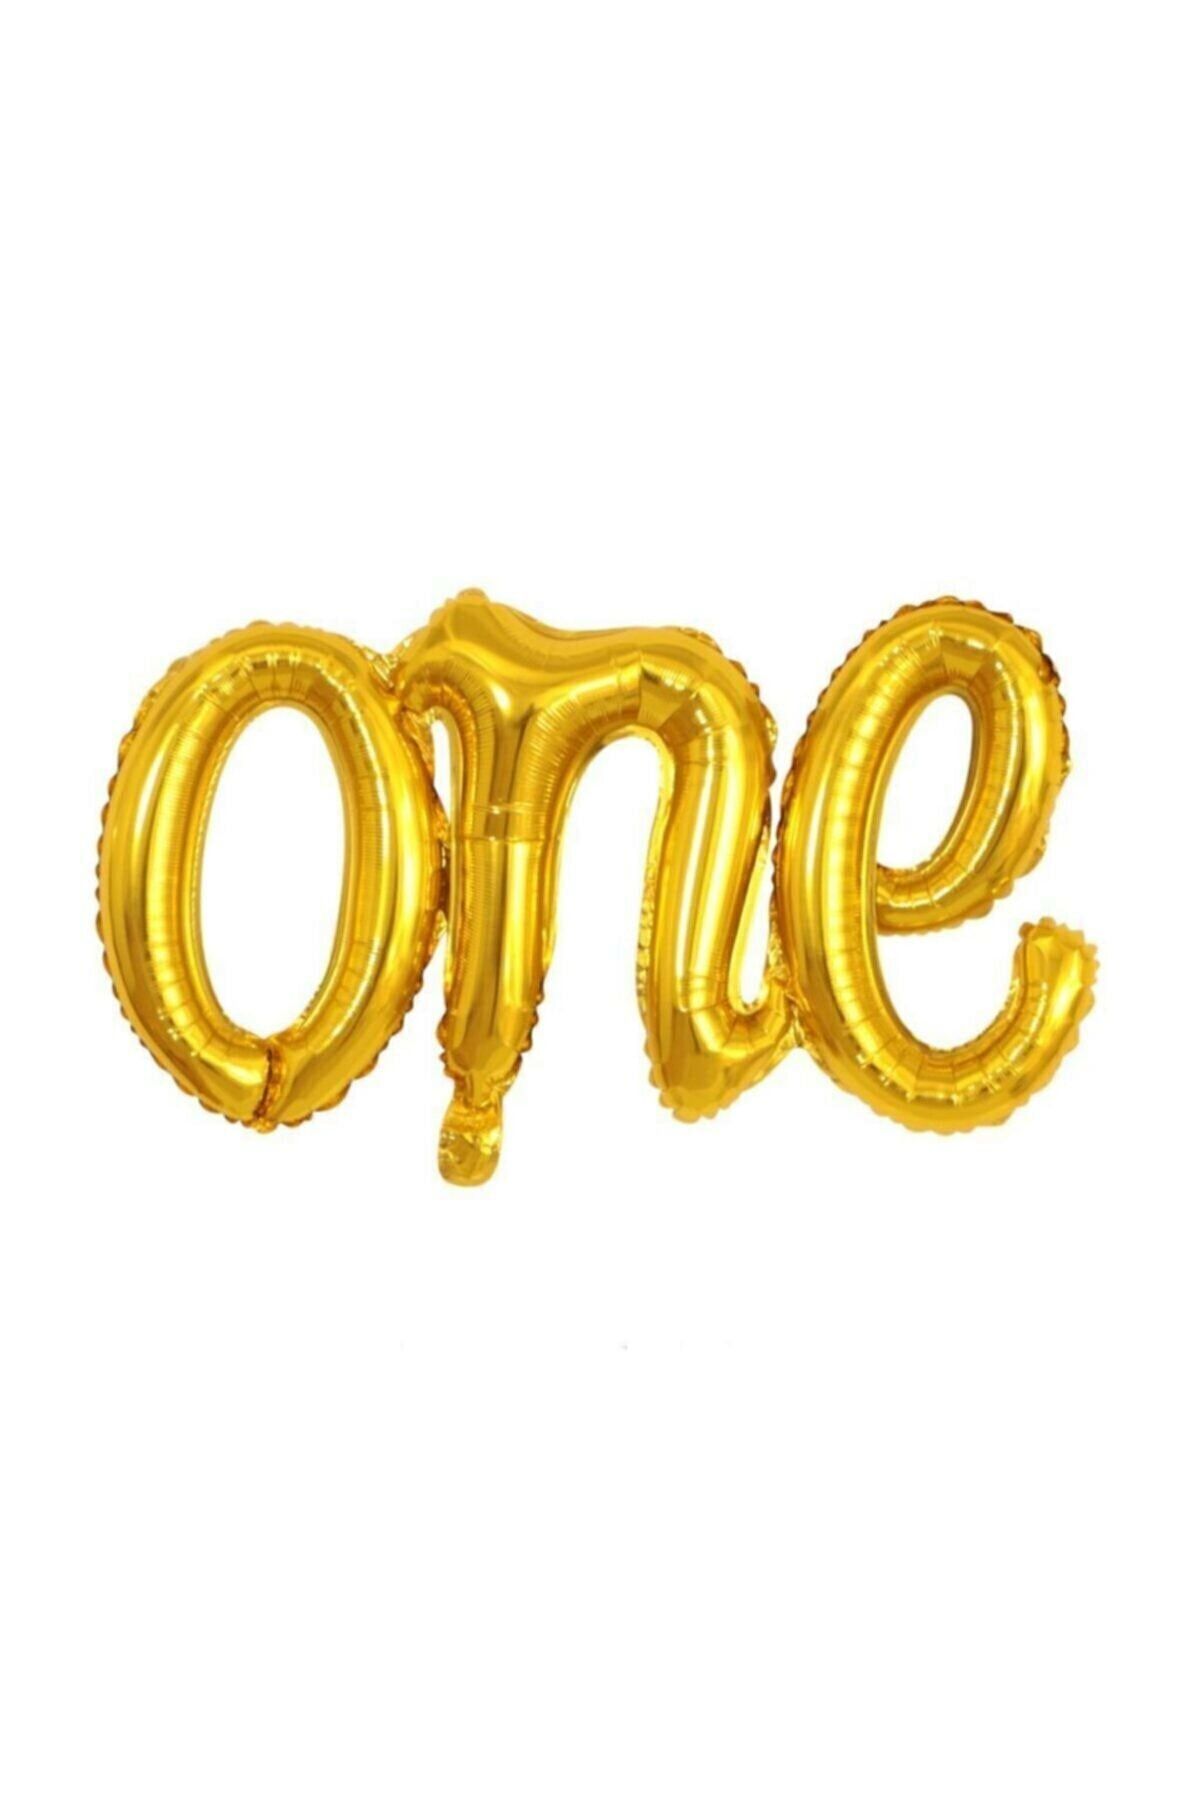 Genel Markalar One Yazılı Altın Renk Folyo Balon